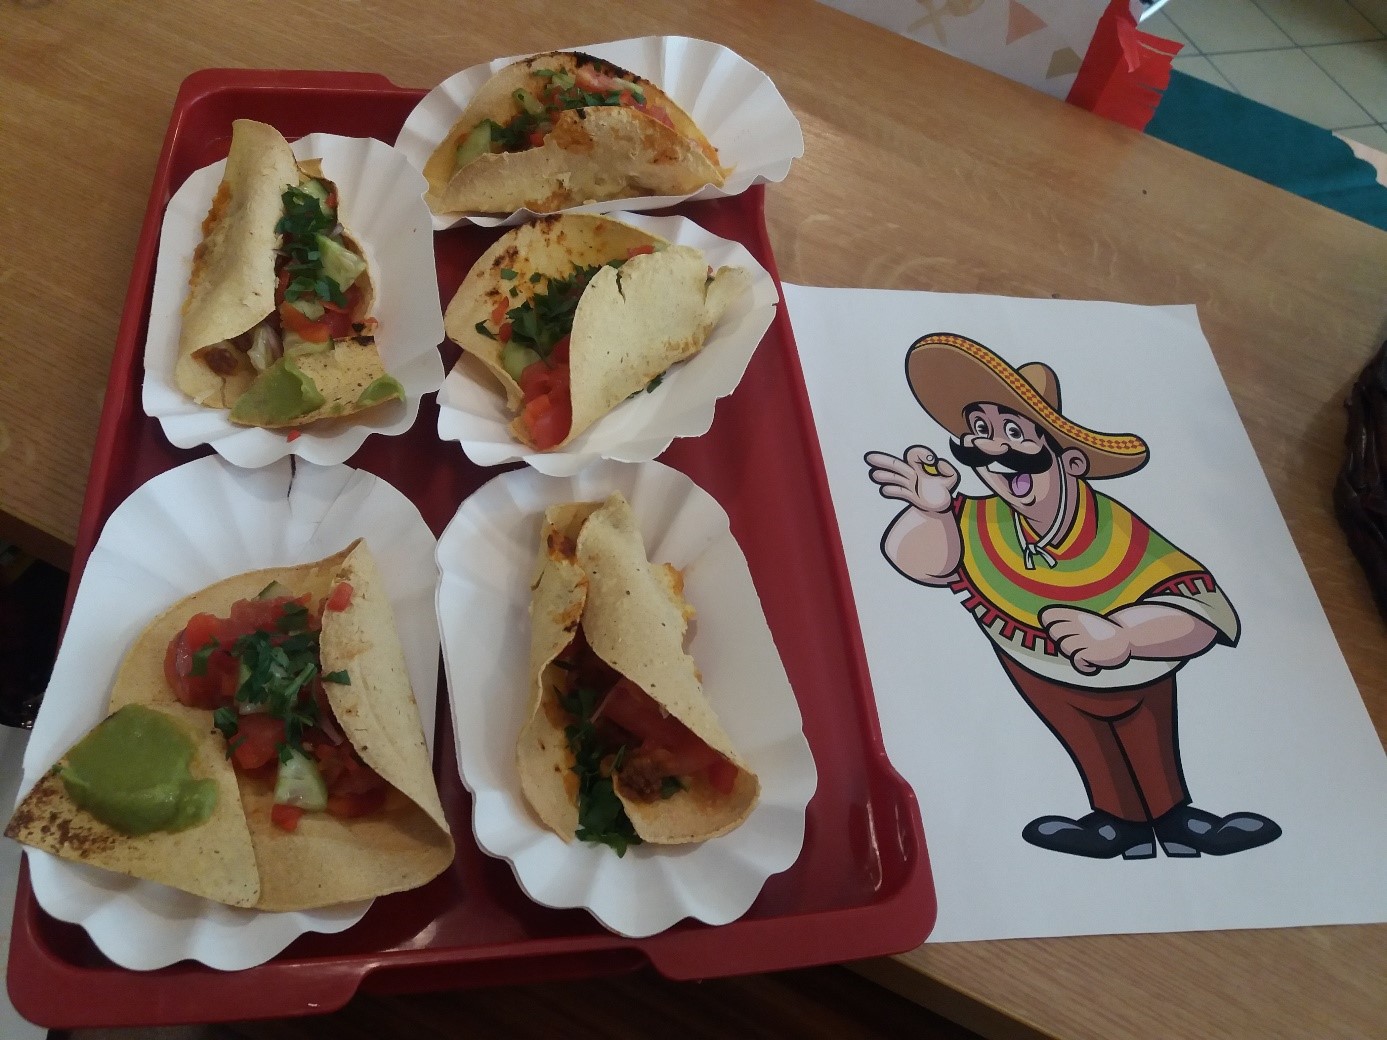 Na zdjęciu widać przygotowane potrawy – tacos z warzywami.